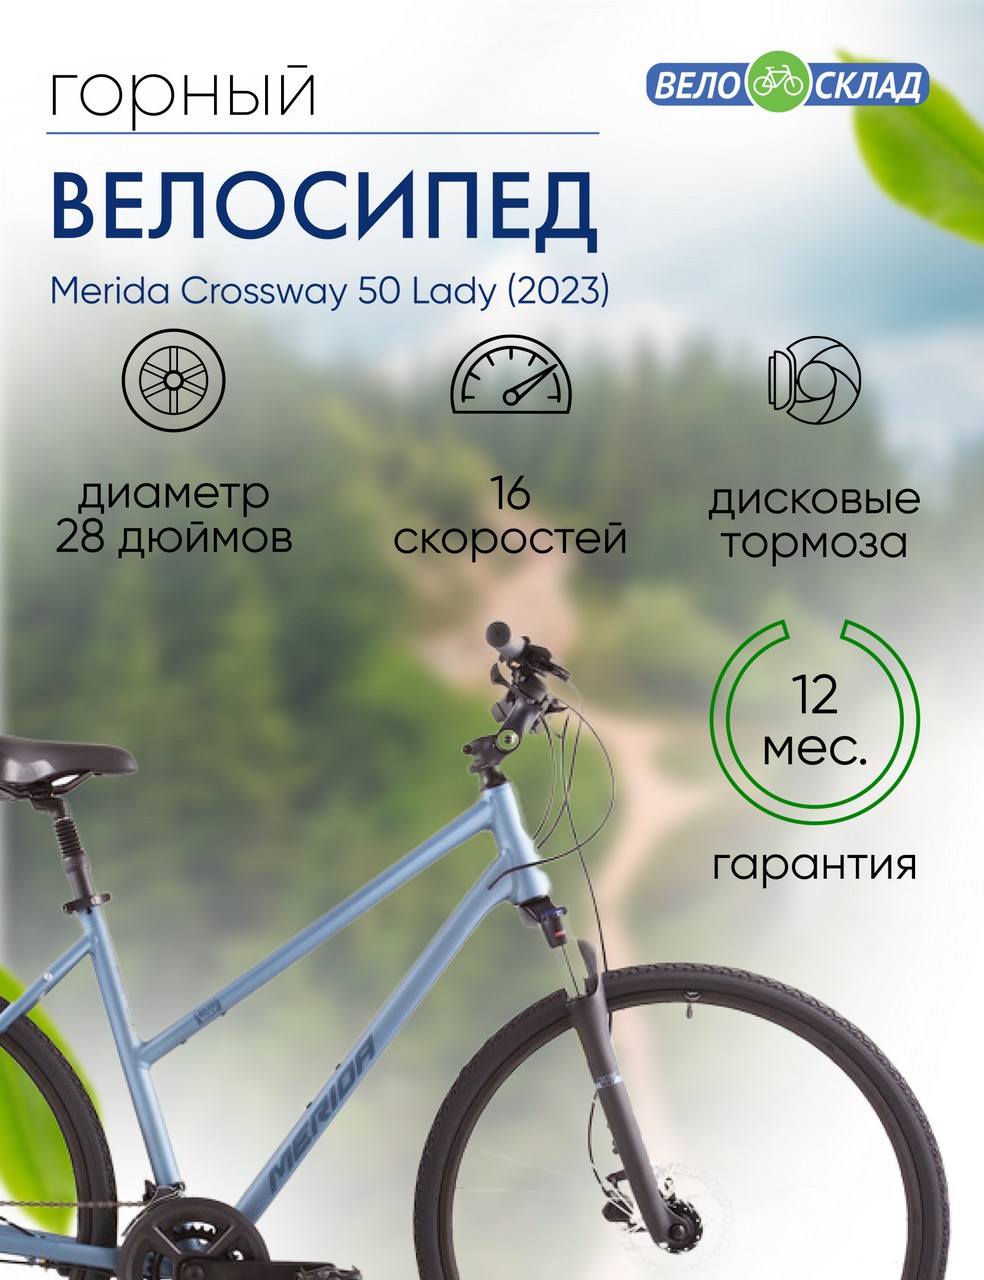 Женский велосипед Merida Crossway 50 Lady, год 2023, цвет Синий-Синий, ростовка 18.5